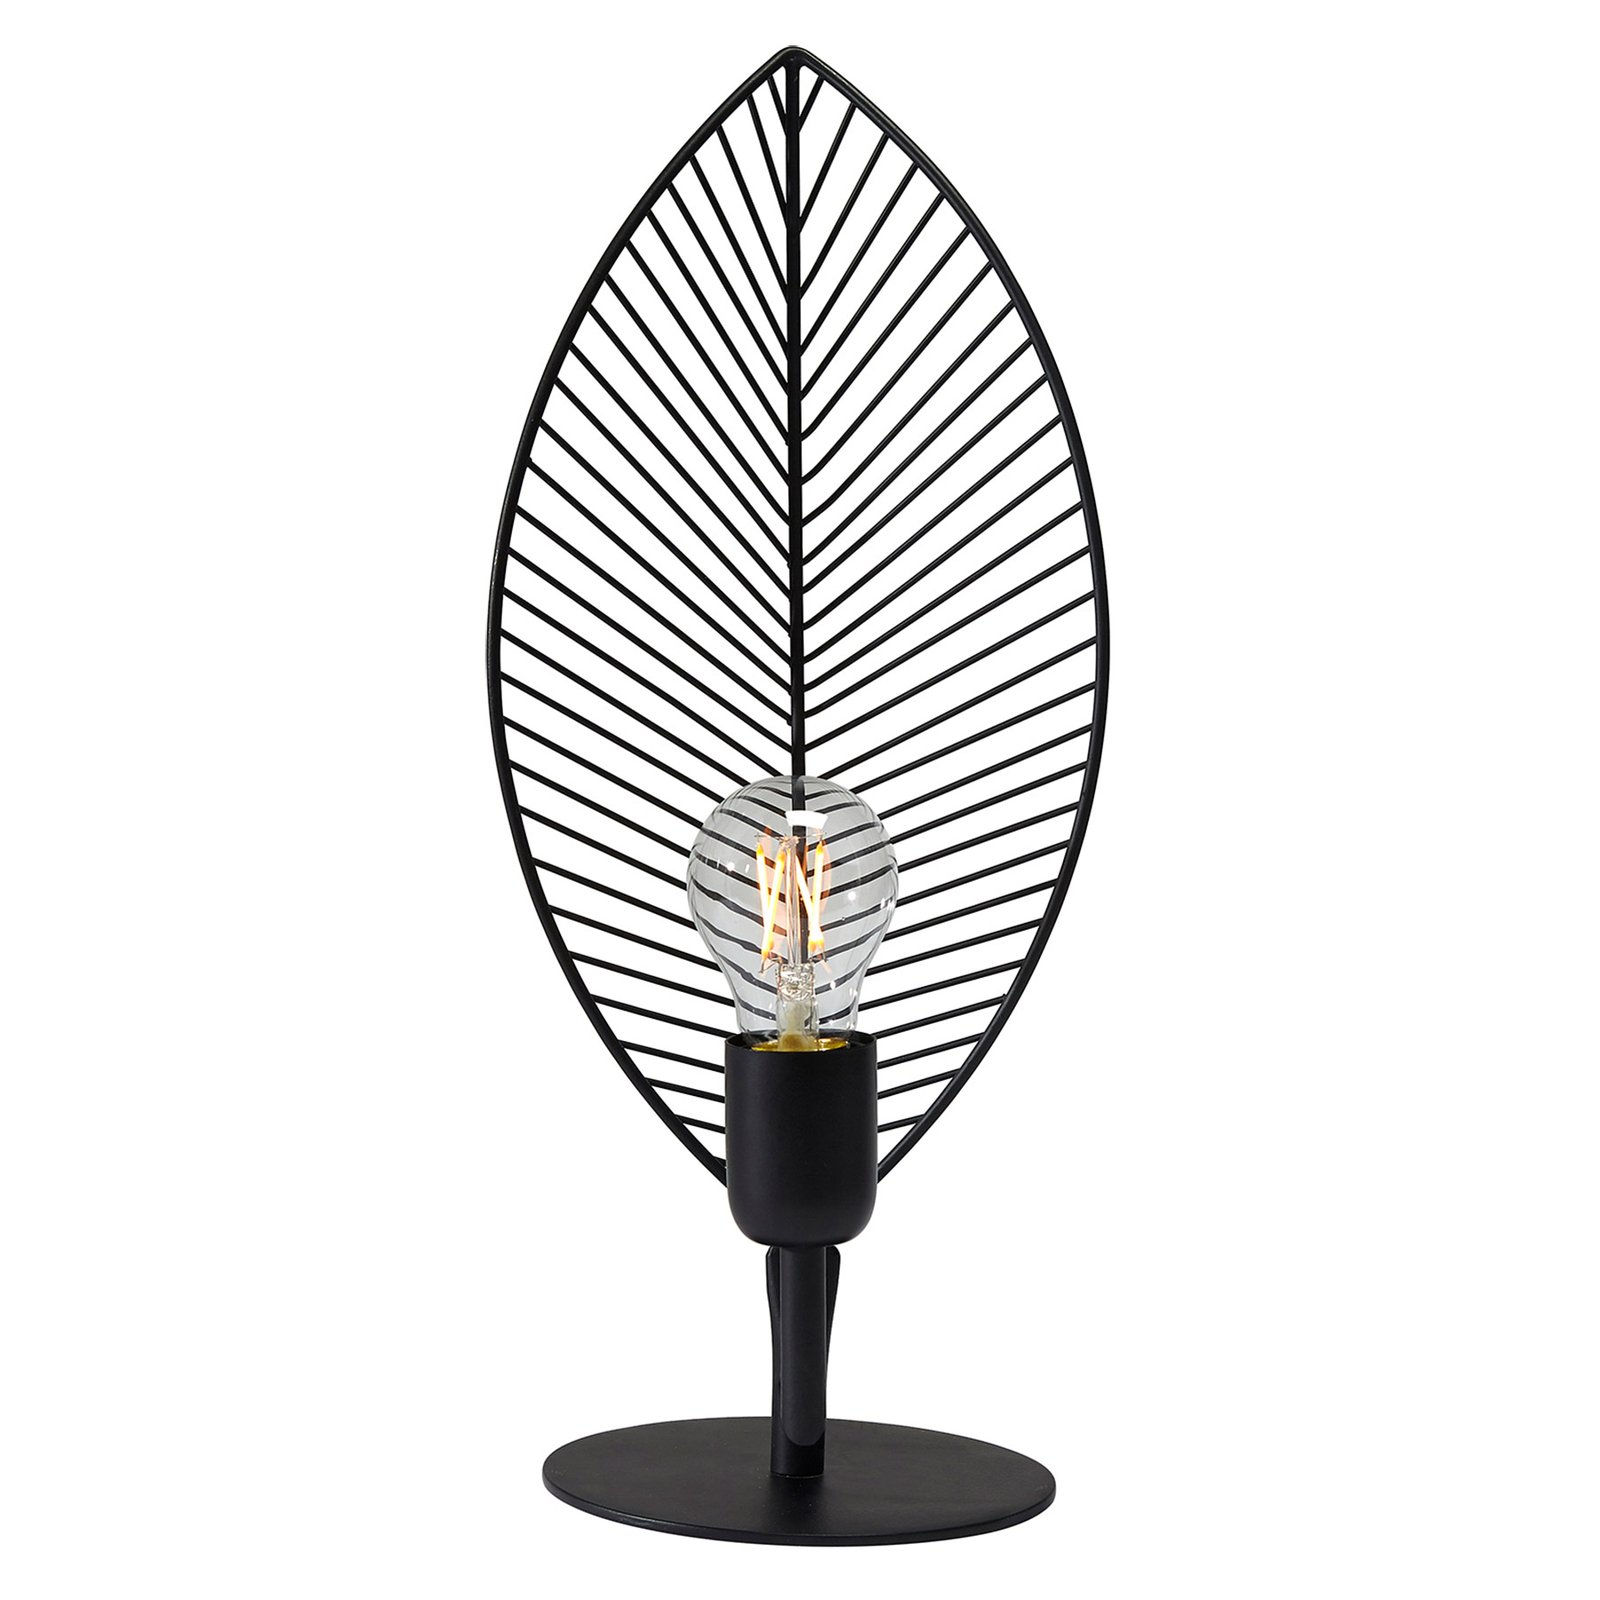 PR Home Elm lampa stołowa w kształcie liścia, wysokość 42 cm